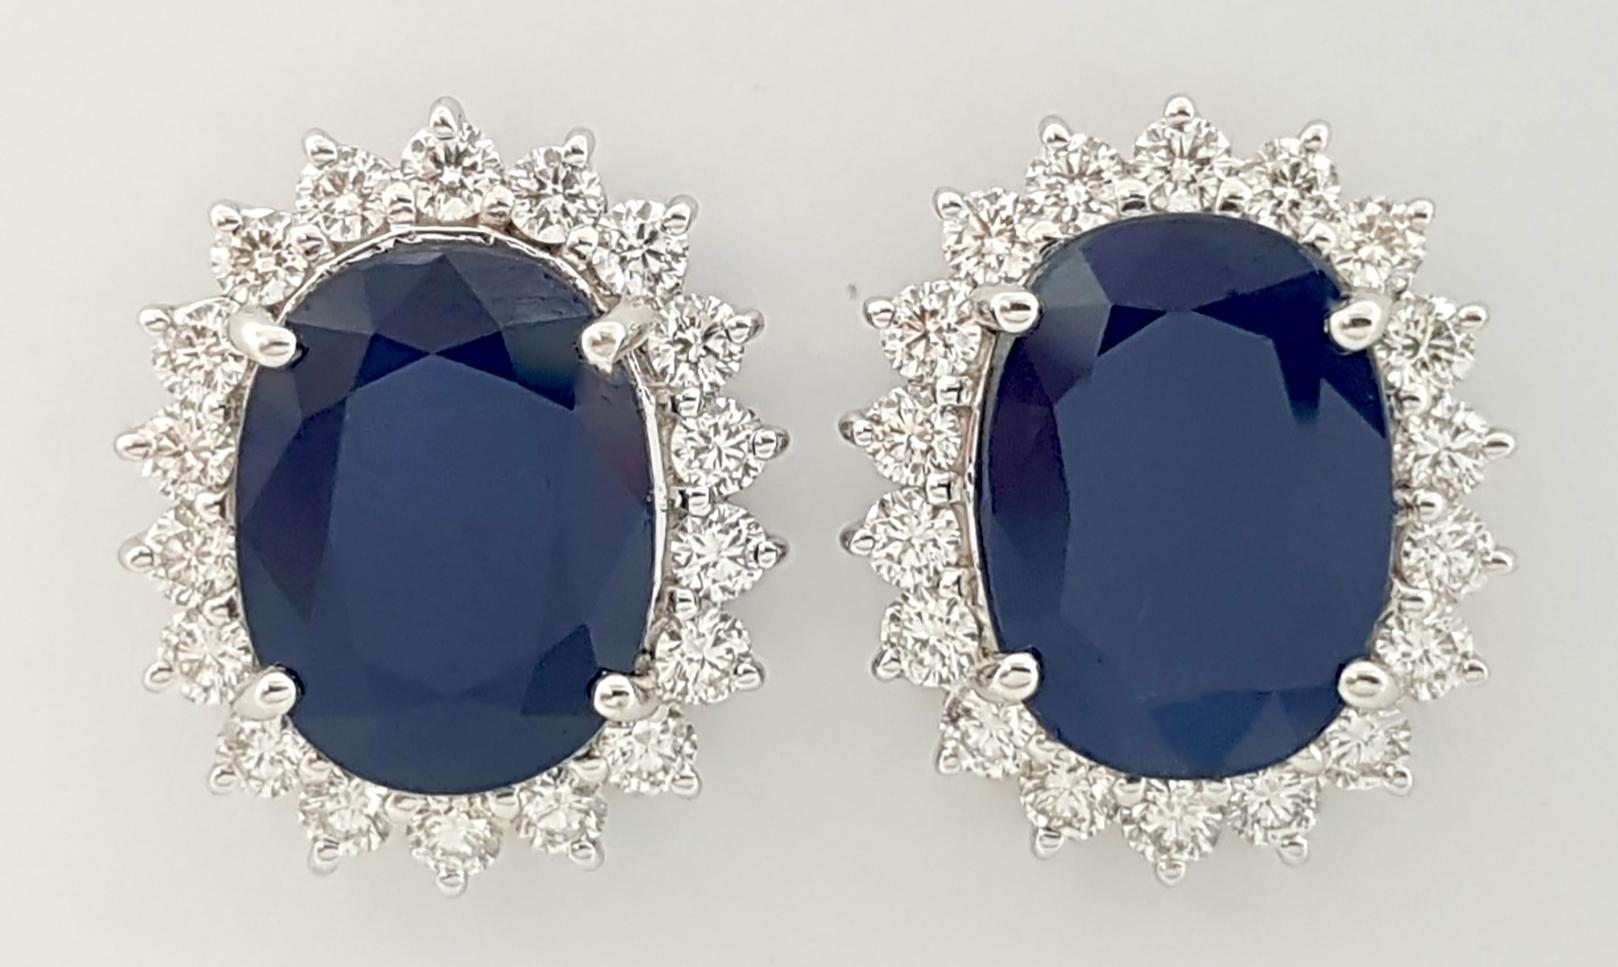 Blauer Saphir 8,45 Karat mit Diamant 1,43 Karat Ohrringe in 18K Weißgoldfassung

Breite: 1.4 cm 
Länge: 1,8 cm
Gesamtgewicht: 11,72 Gramm

